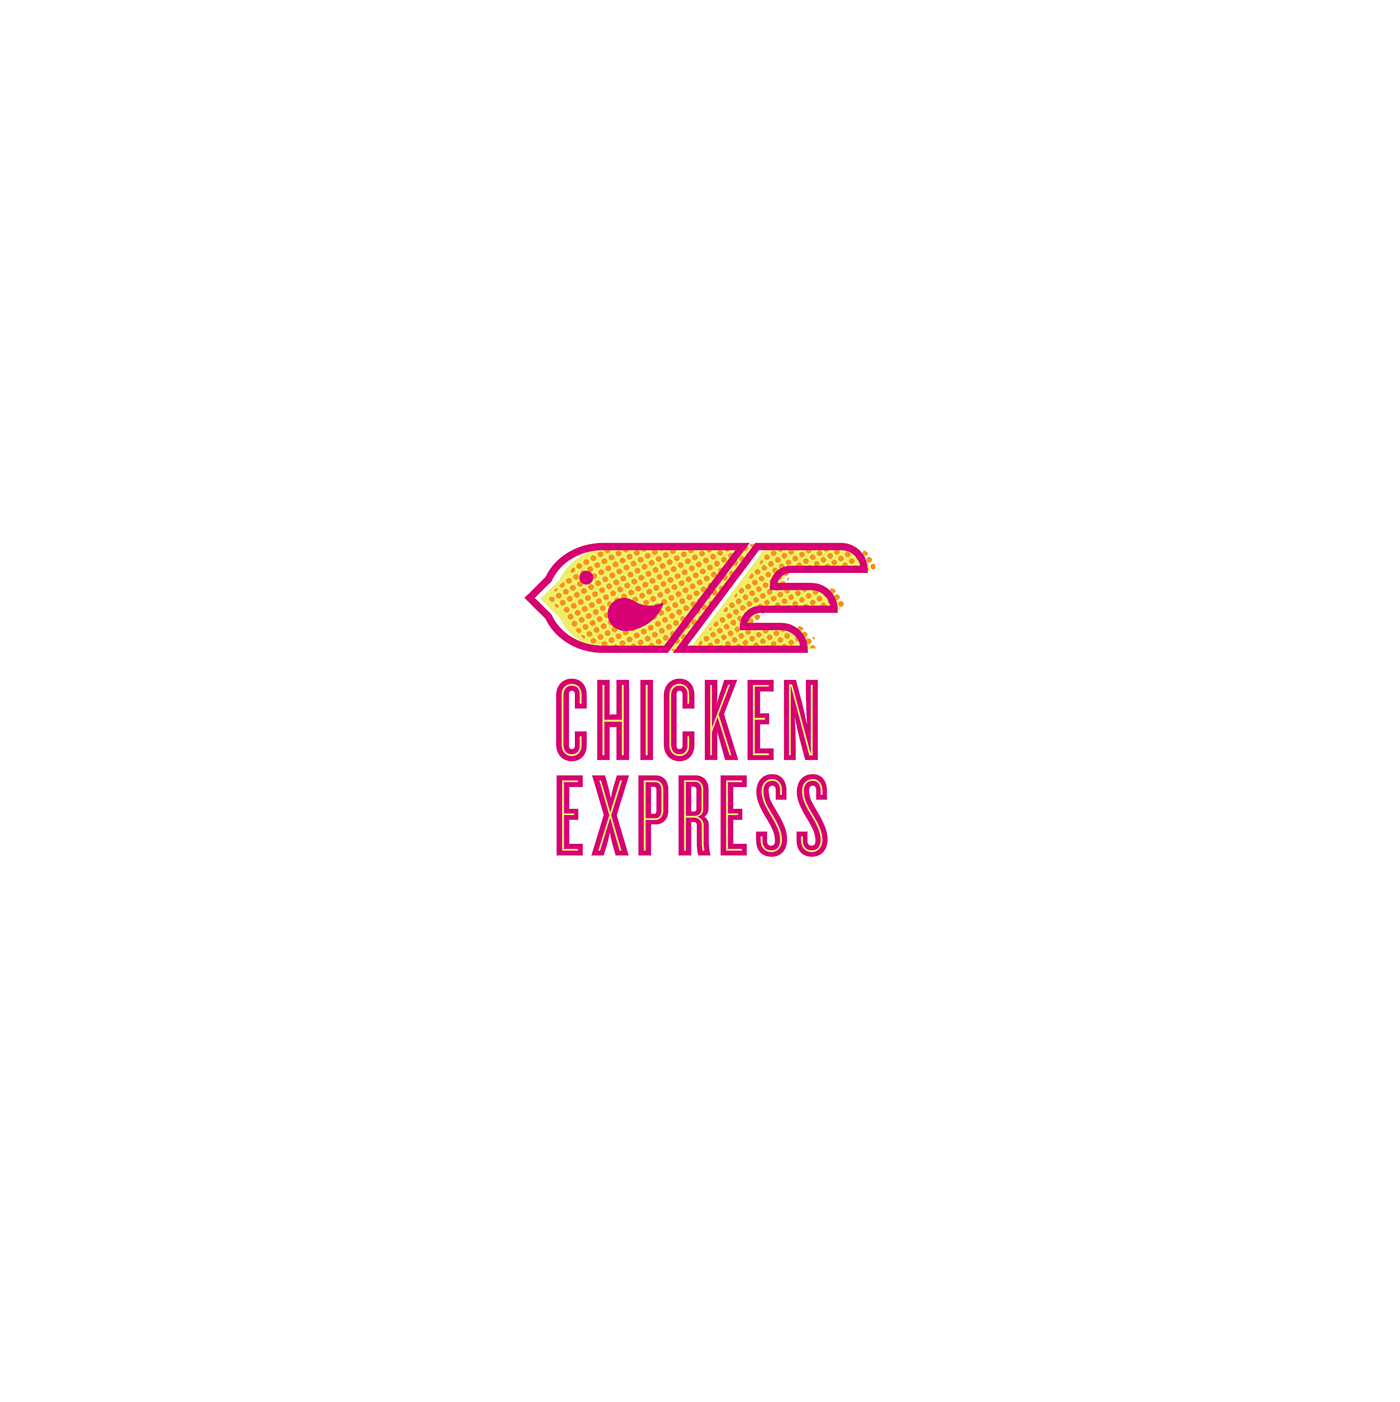 Chicken Express Logo - Chicken Express Identity